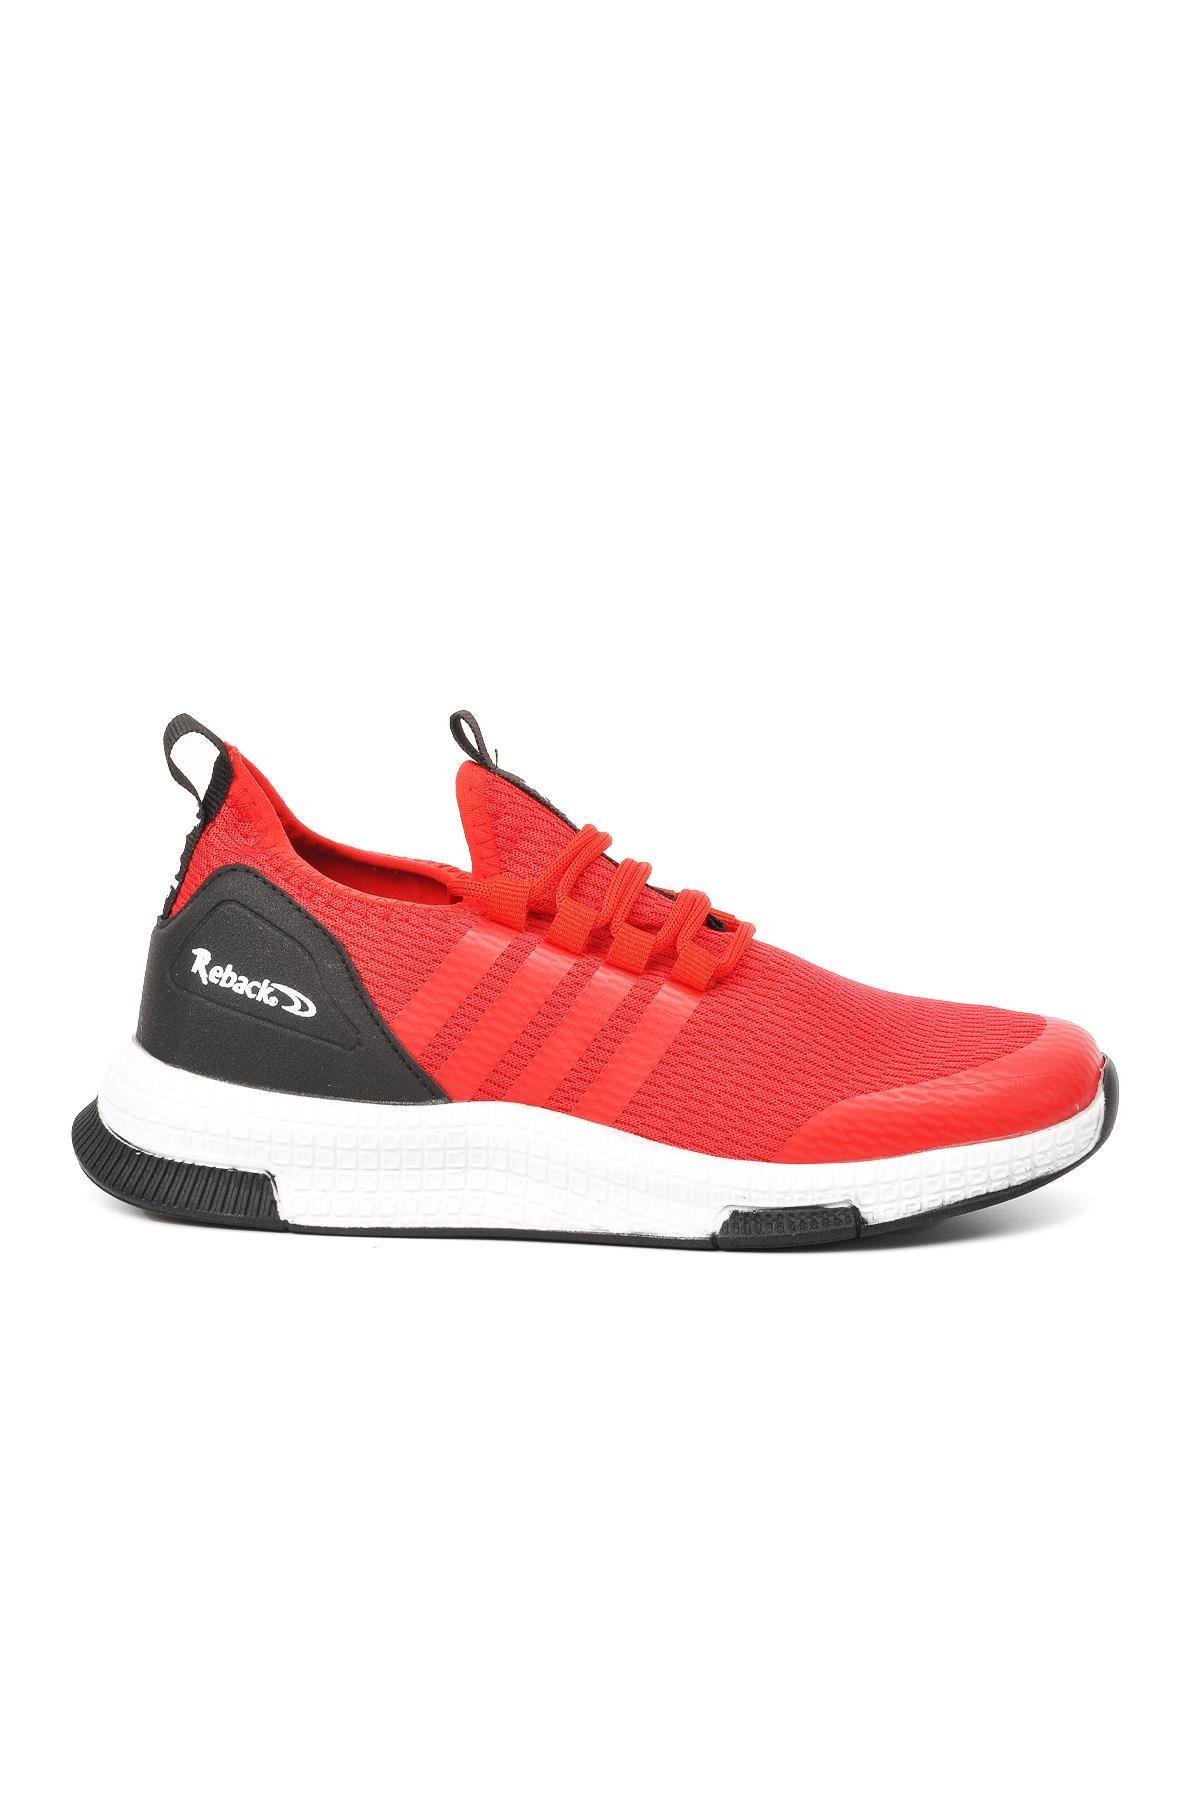 Ayakmod 4010 Kırmızı-Beyaz Fileli Yazlık Erkek Spor Ayakkabı - Ayakmod